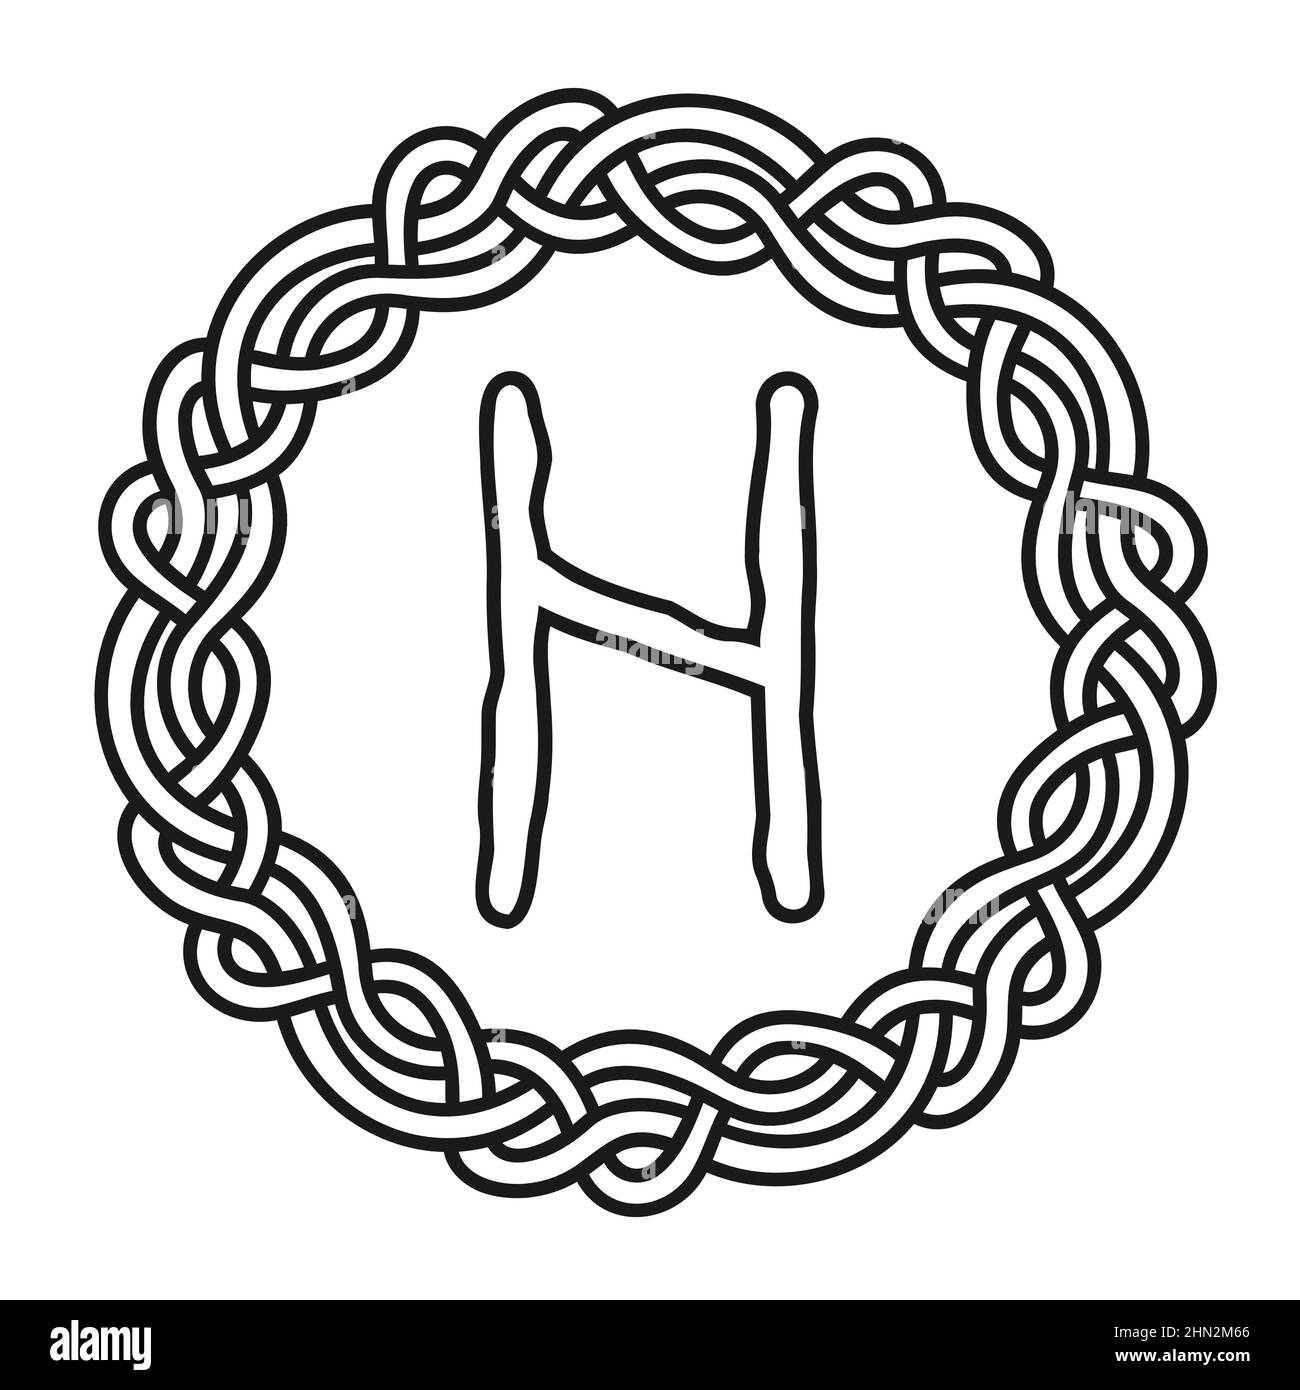 Rune Hagalaz in un cerchio - un antico simbolo o segno scandinavo, amuleto.  Vichingo scrittura. Illustrazione vettoriale disegnata a mano per i Web  site, i giochi Immagine e Vettoriale - Alamy